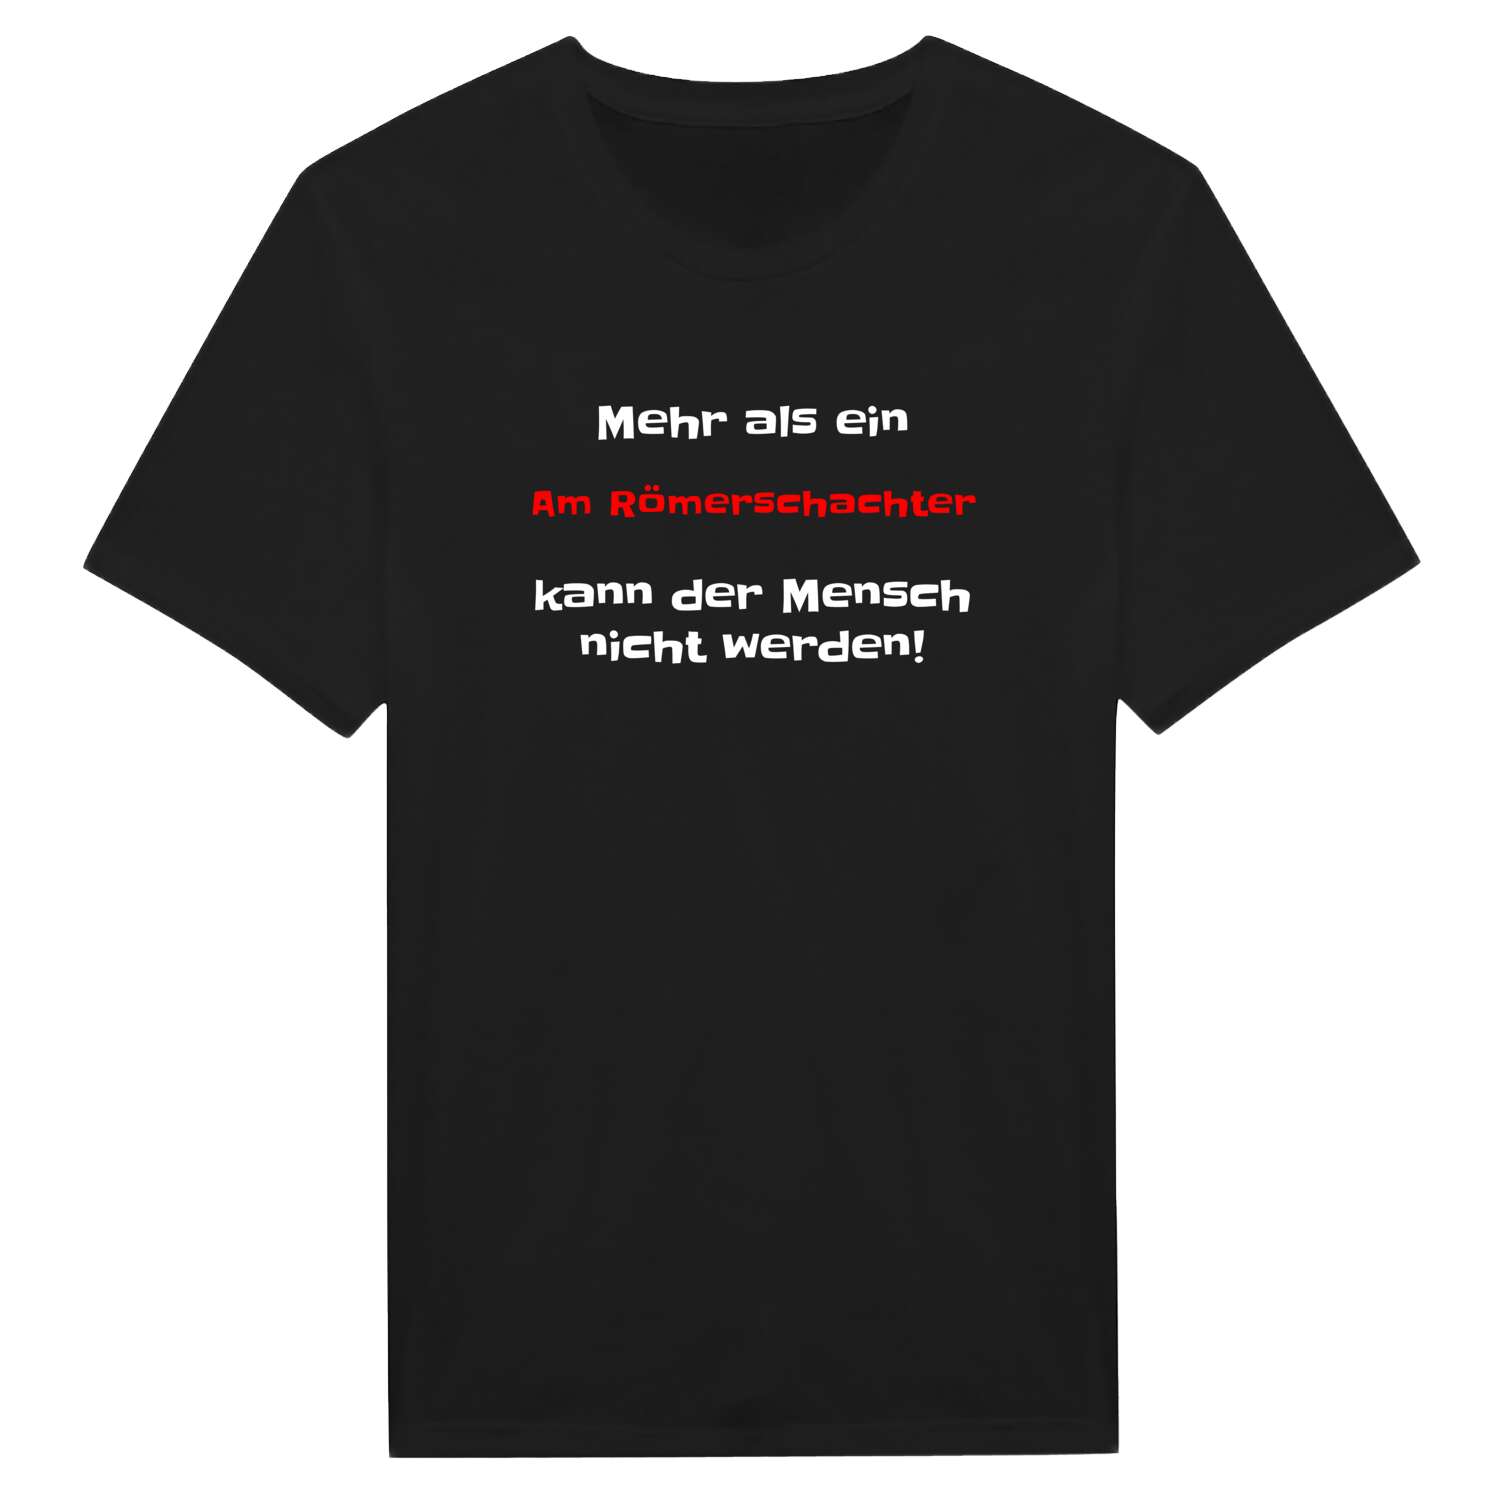 Am Römerschacht T-Shirt »Mehr als ein«